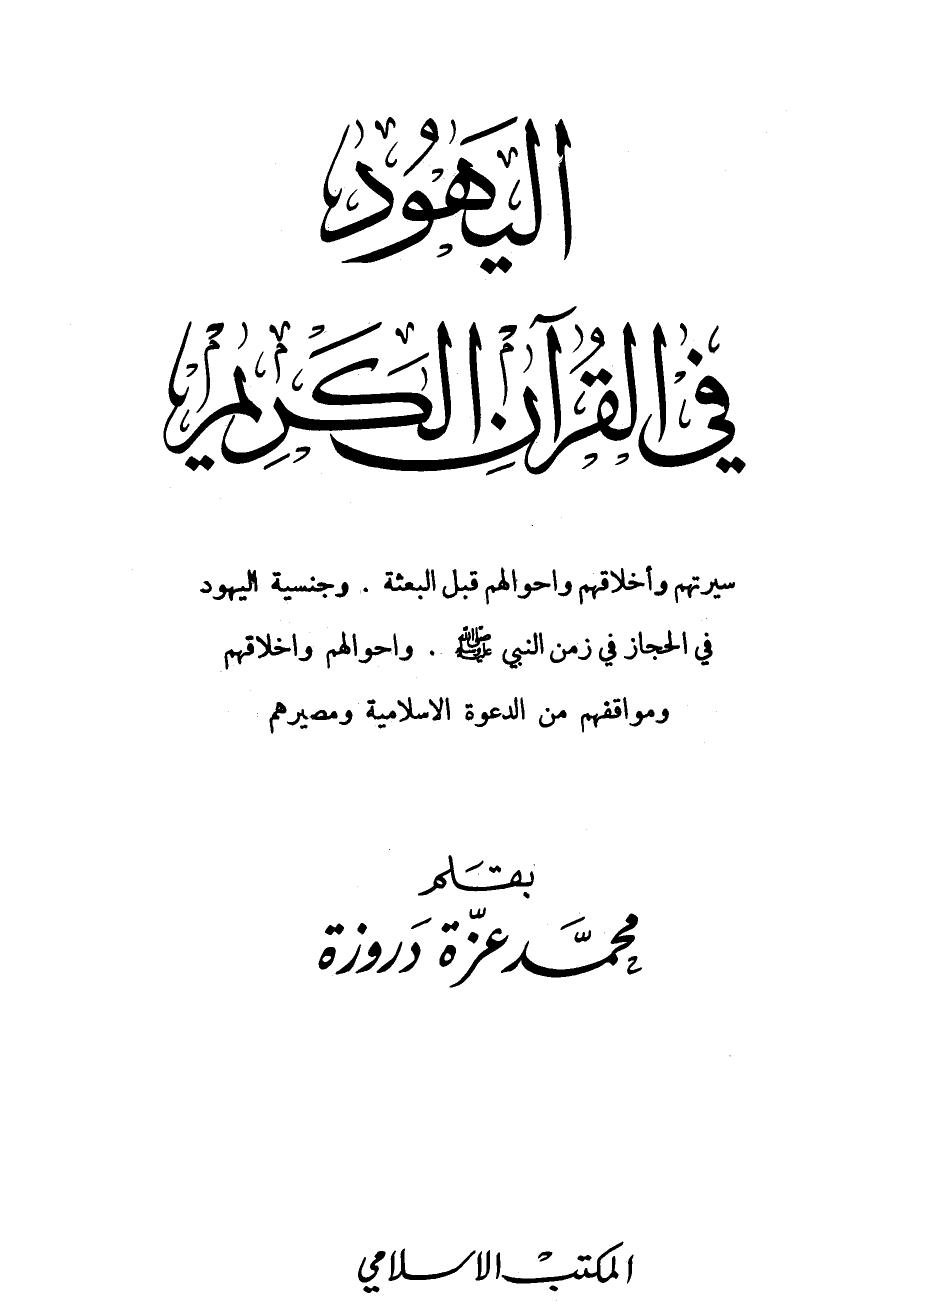 تنزيل وتحميل كتاِب اليهود في القرآن الكريم pdf برابط مباشر مجاناً 